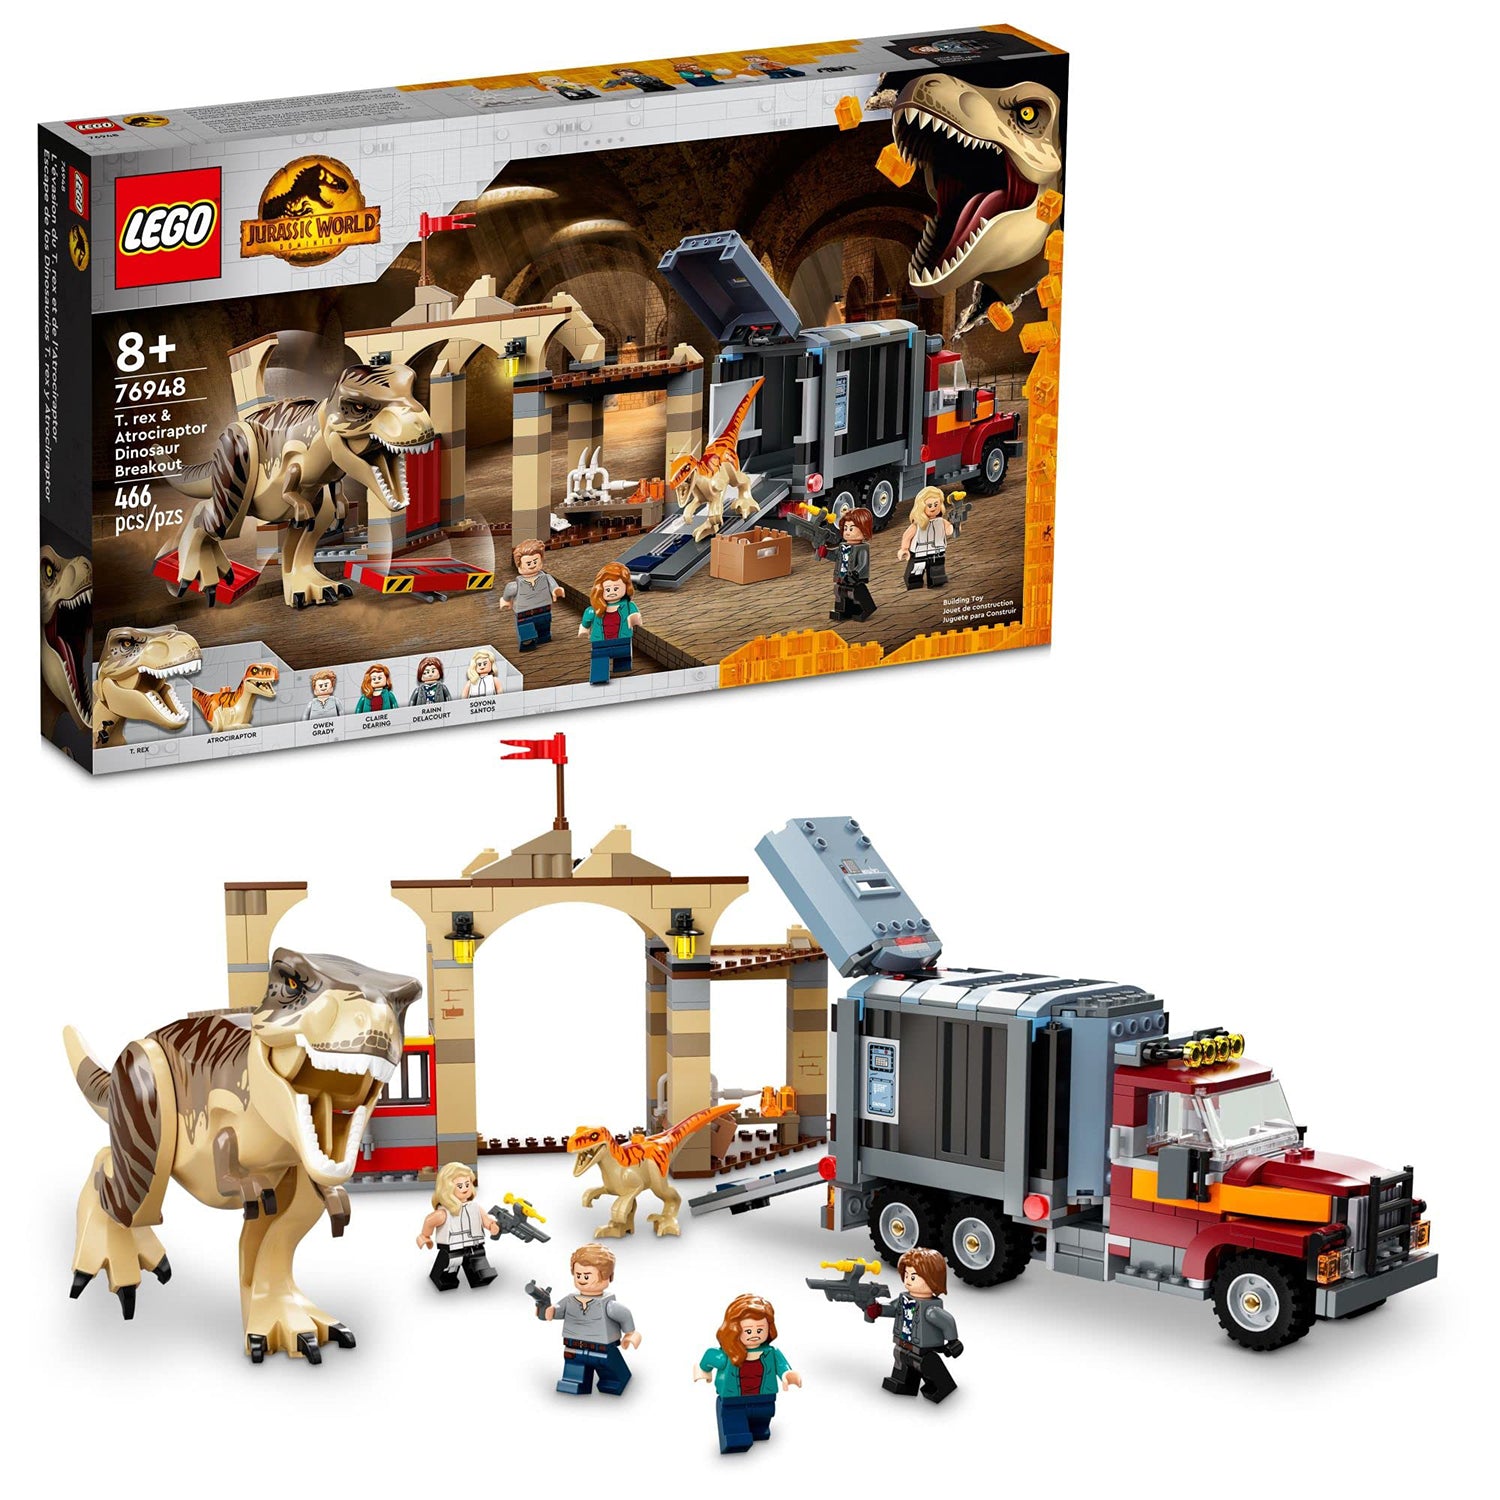 LEGO Jurassic World Dominion - T. rex & Atrociraptor Dinosaur Breakout [76948 - 466 Pieces]